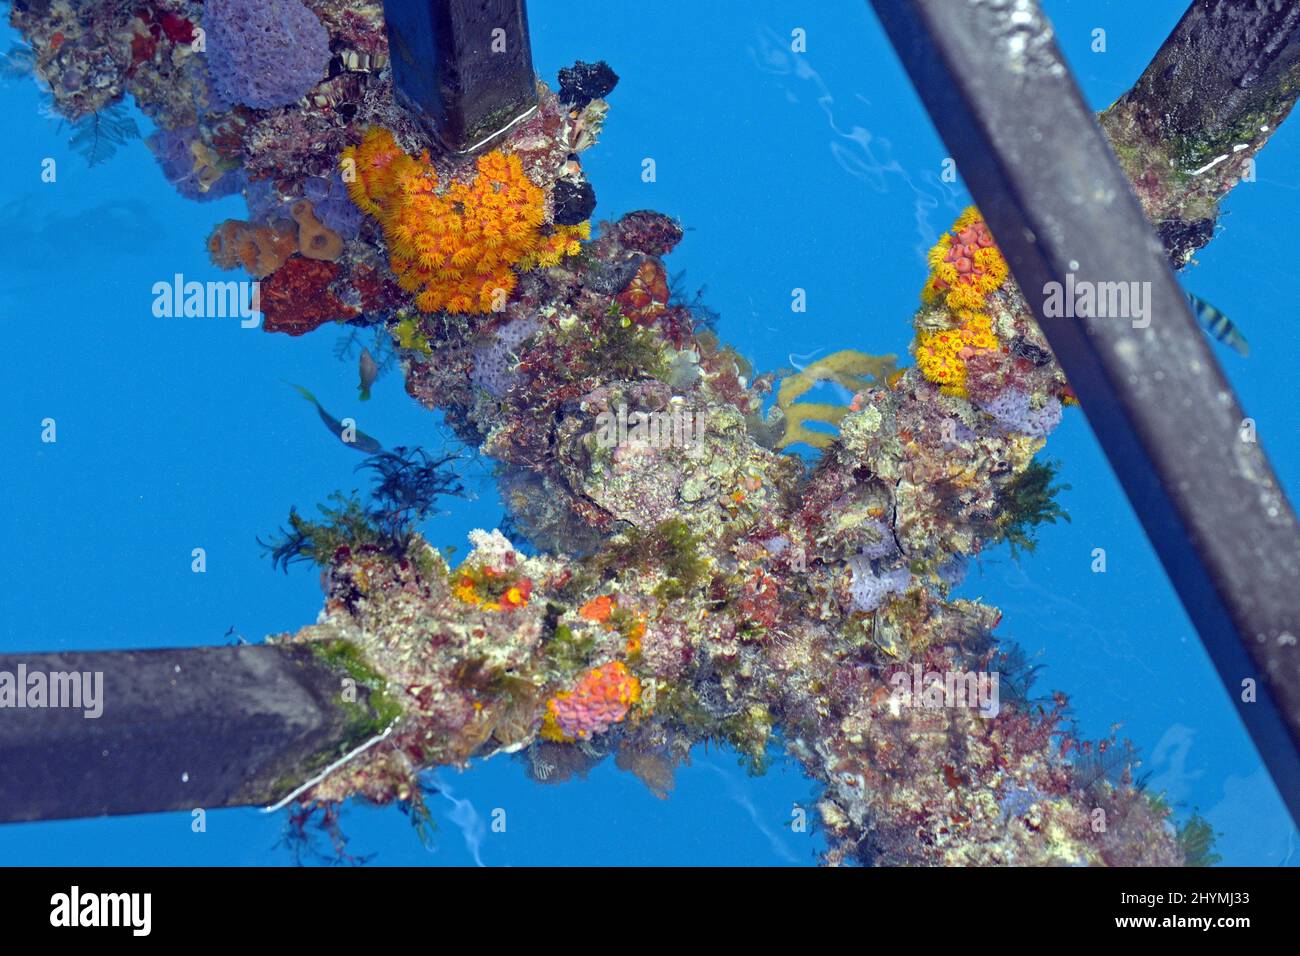 Madripori, spugne e alghe di nuova produzione sulle staffe di una stazione di immersione nella Grande barriera Corallina, Australia Foto Stock